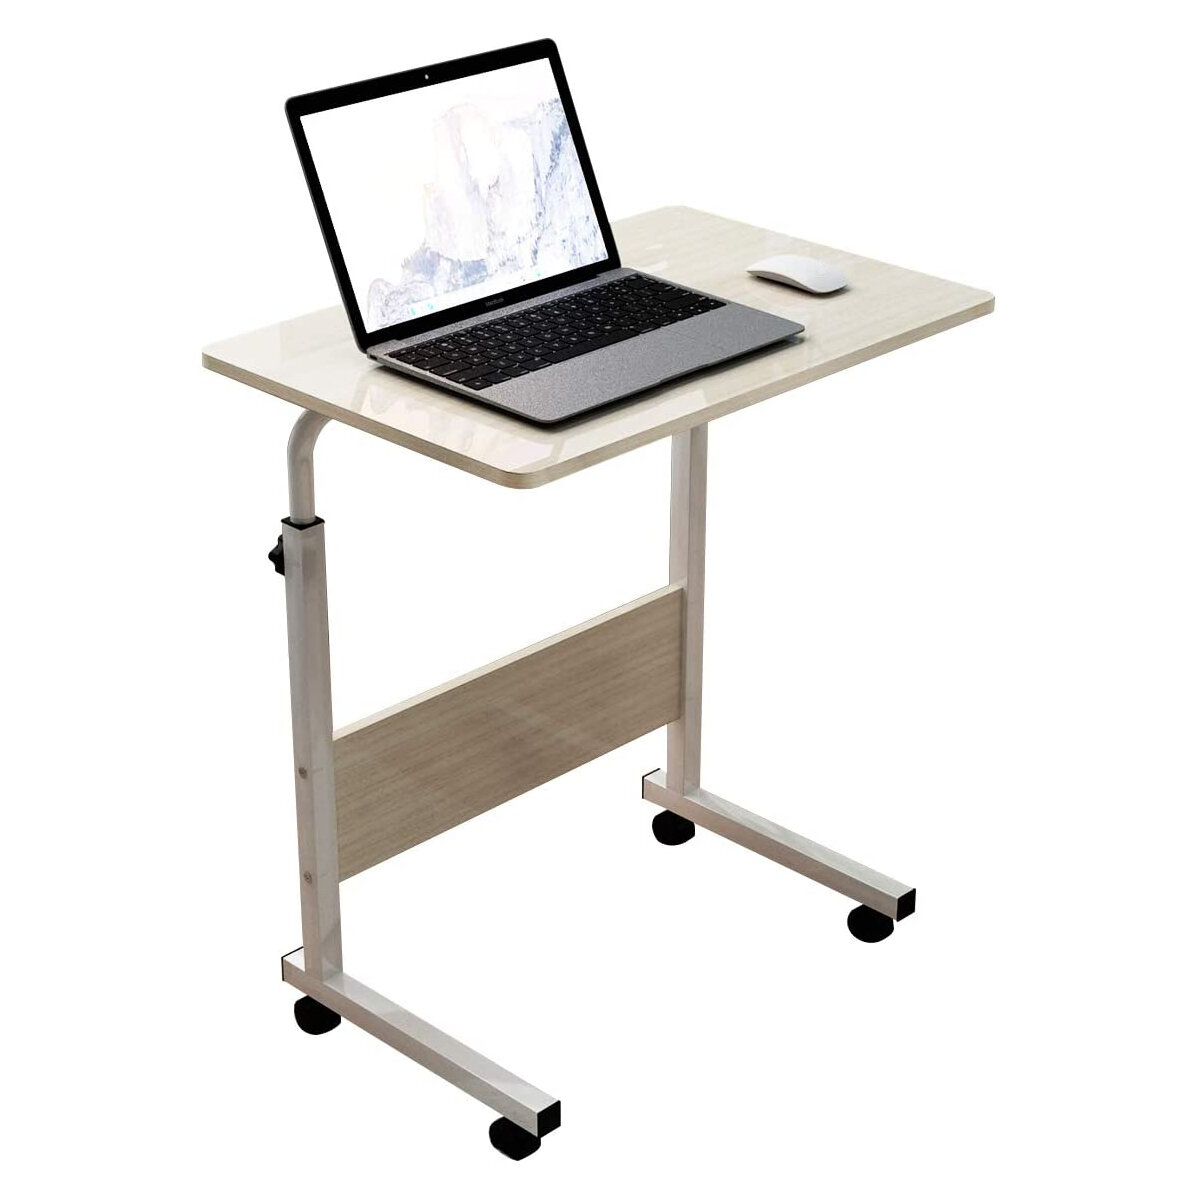 Στα 39.72 € από αποθήκη Τσεχίας | Moveable Computer Laptop Desk Height  Adjustable Writing Study Table Workstation with Wheels Home Office Furniture